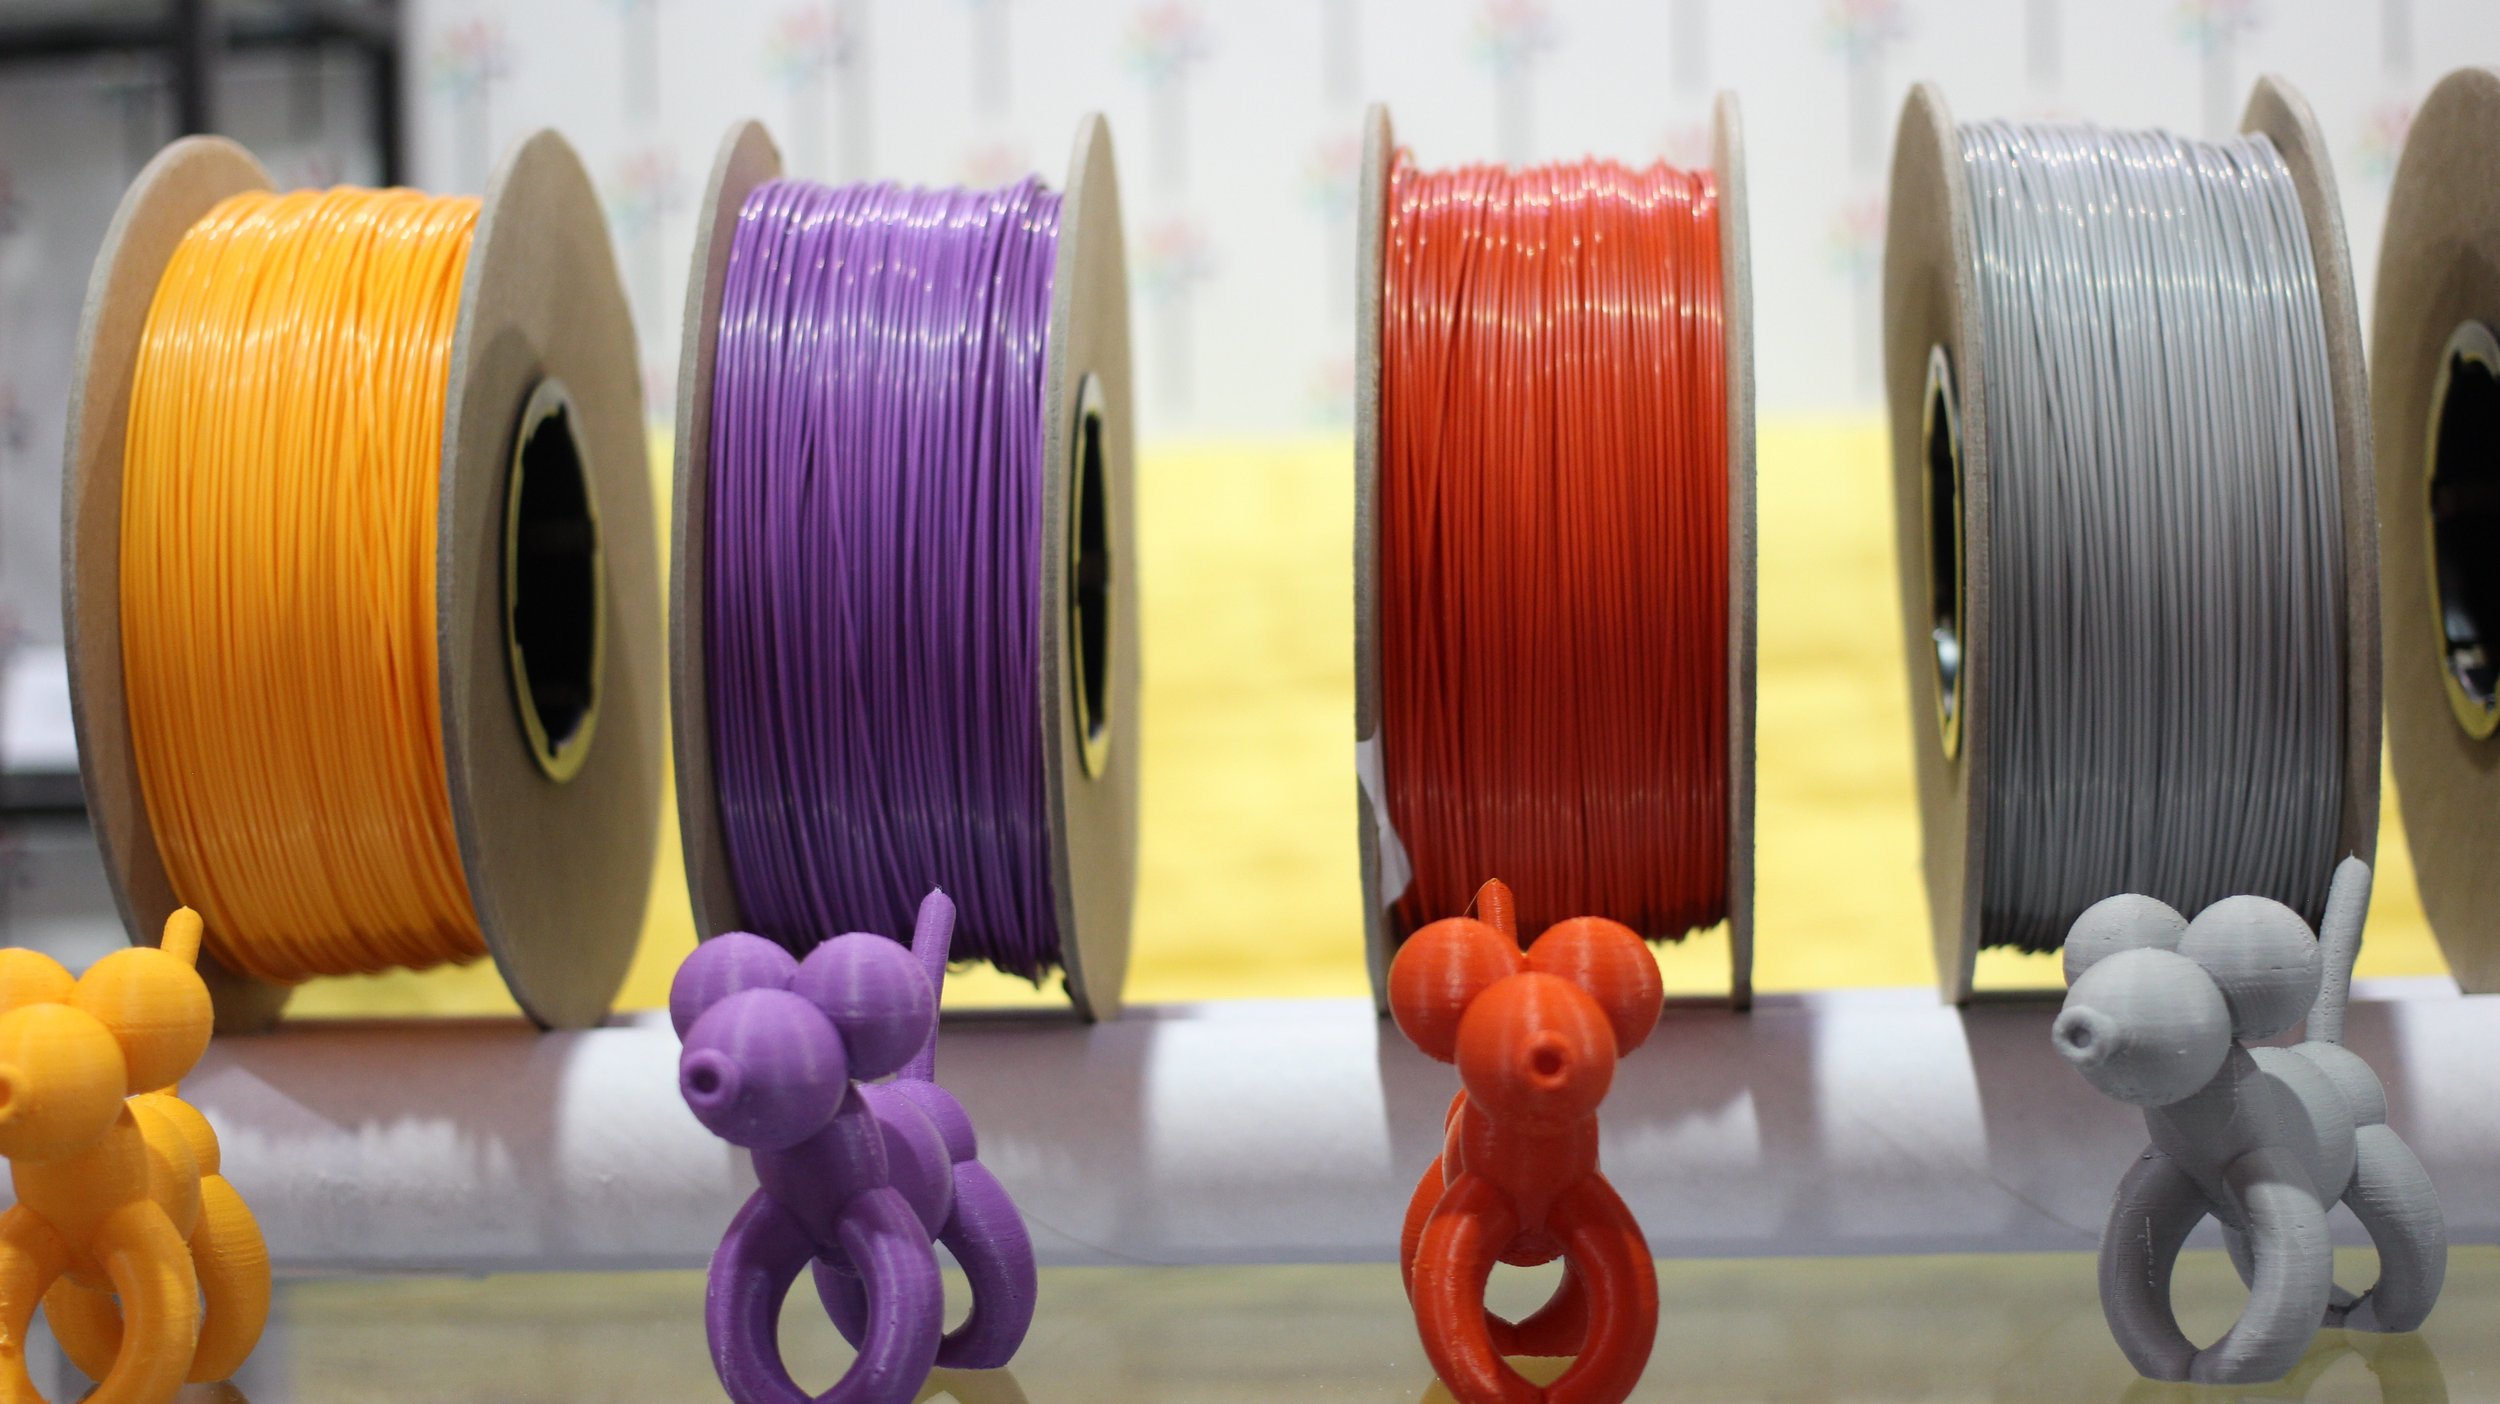 Le TOP5 des matériaux d'impression 3D les plus utilisés - Polyfab3D